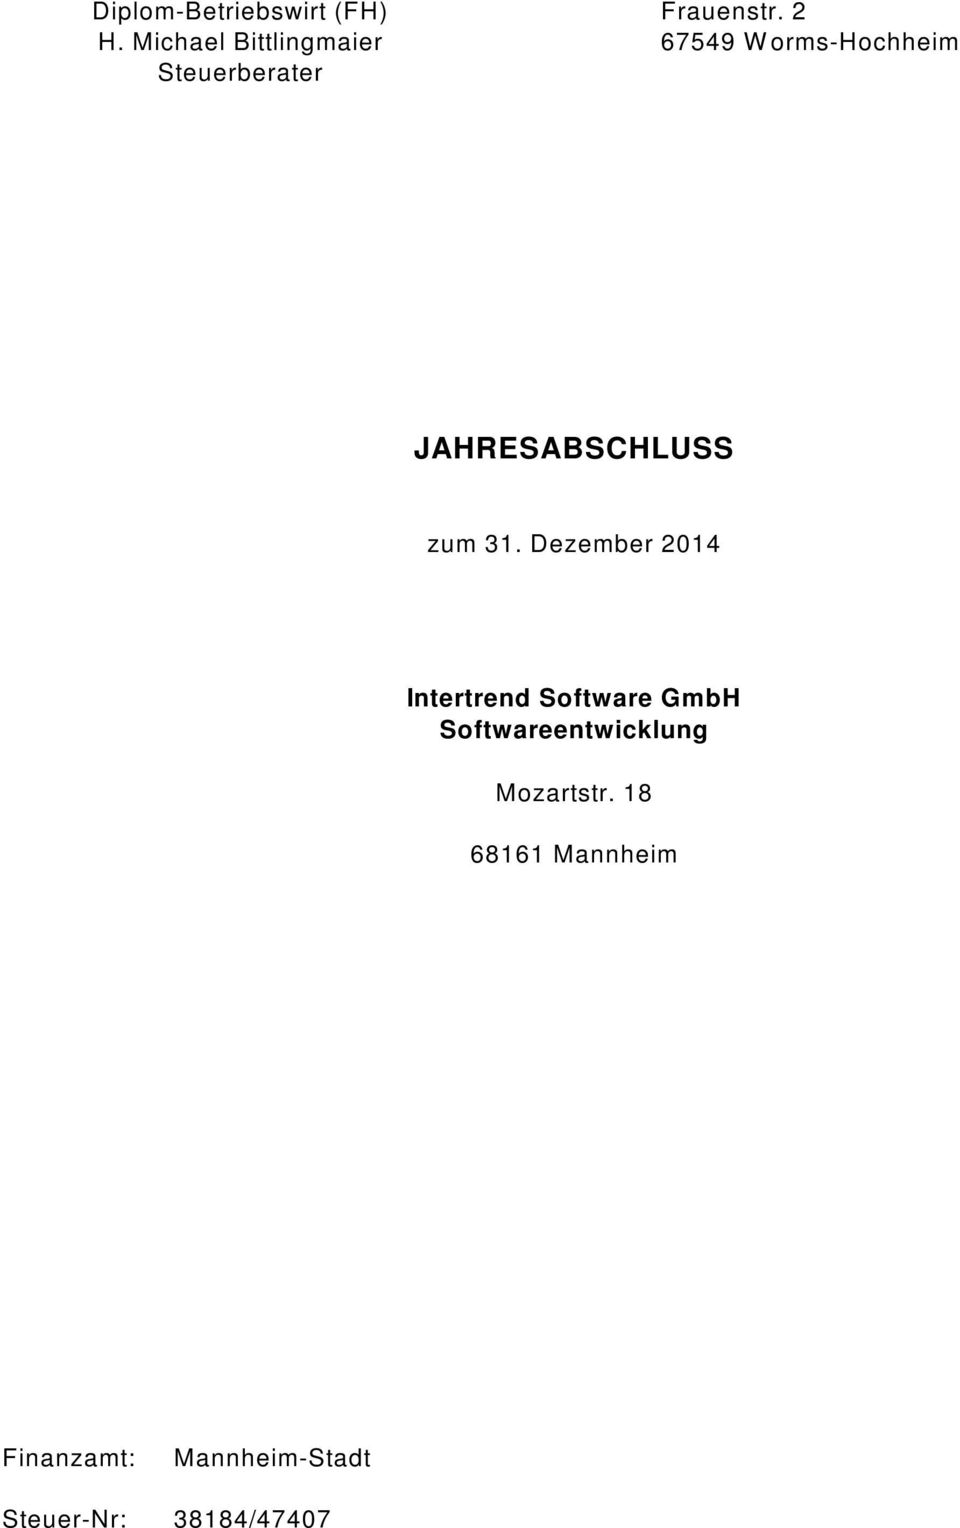 2 67549 Worms-Hochheim JAHRESABSCHLUSS zum 31.